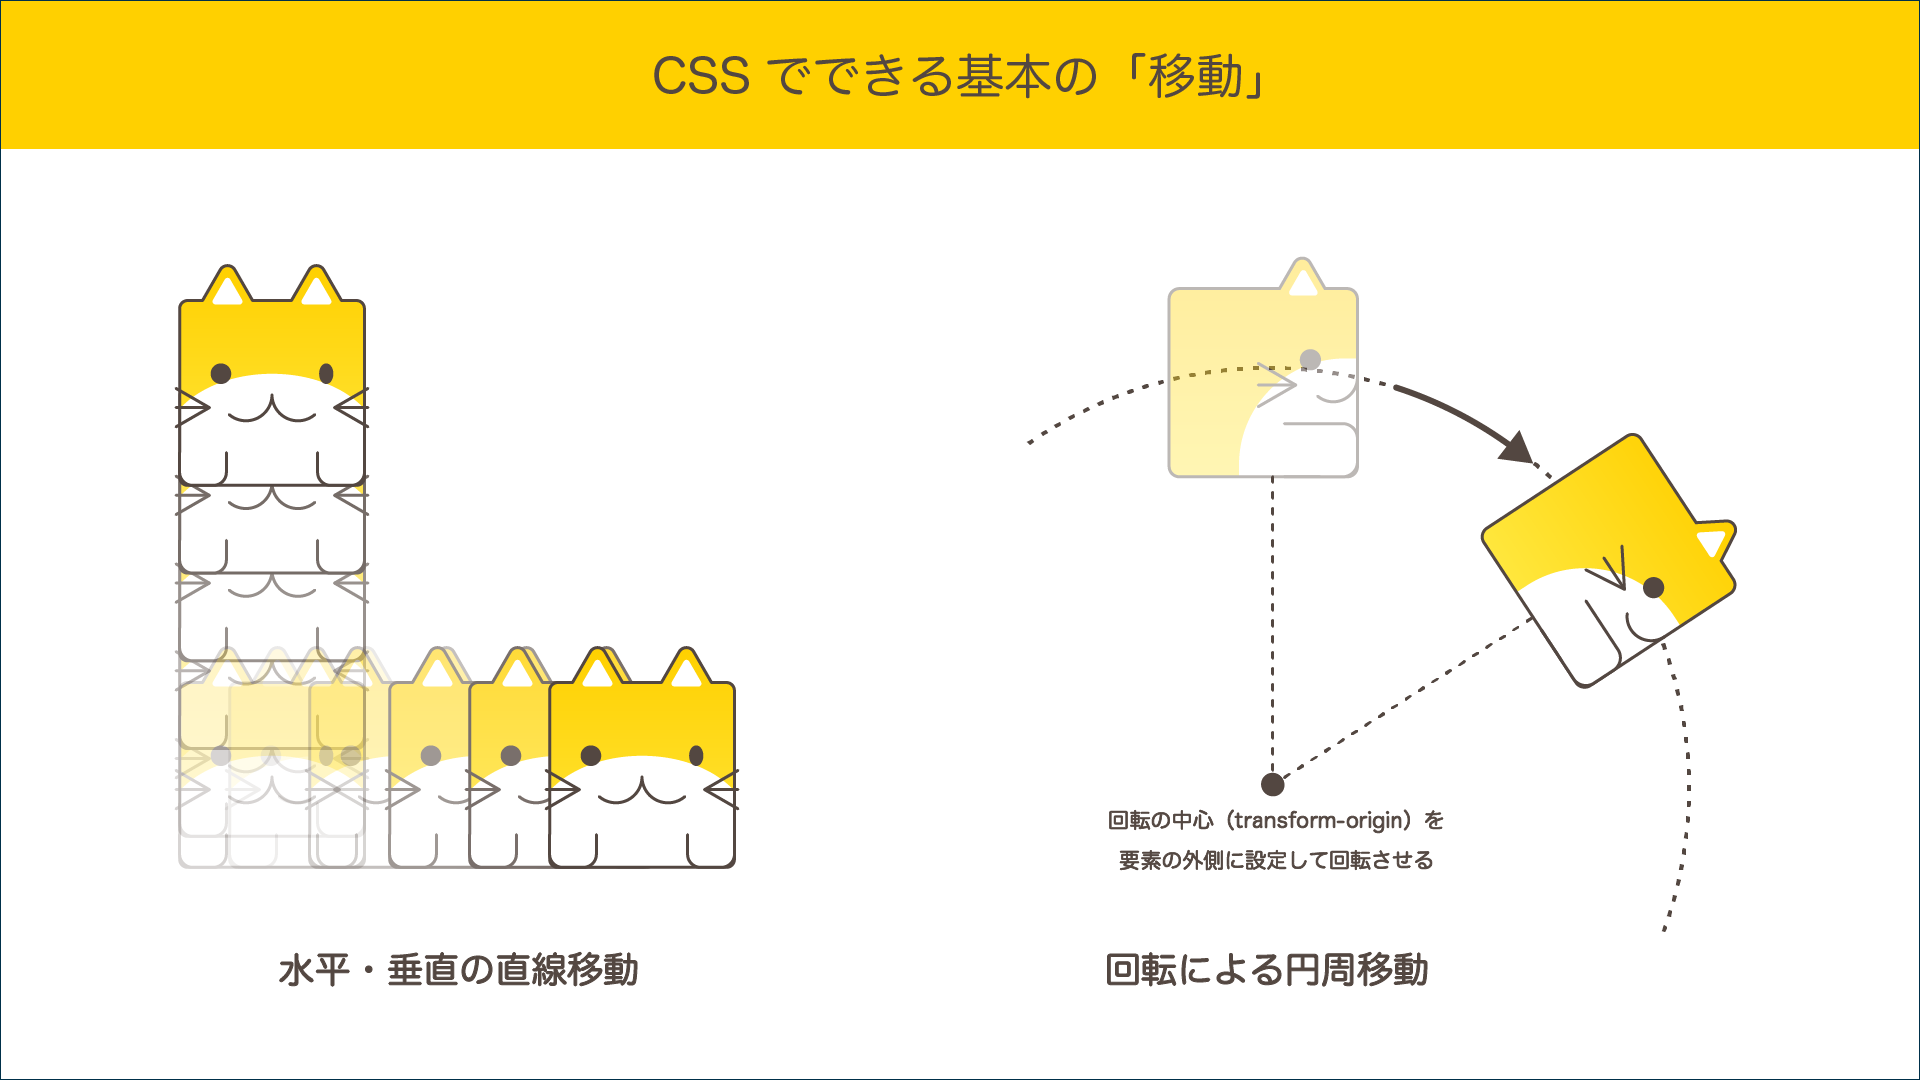 CSSでできる基本の移動の説明図